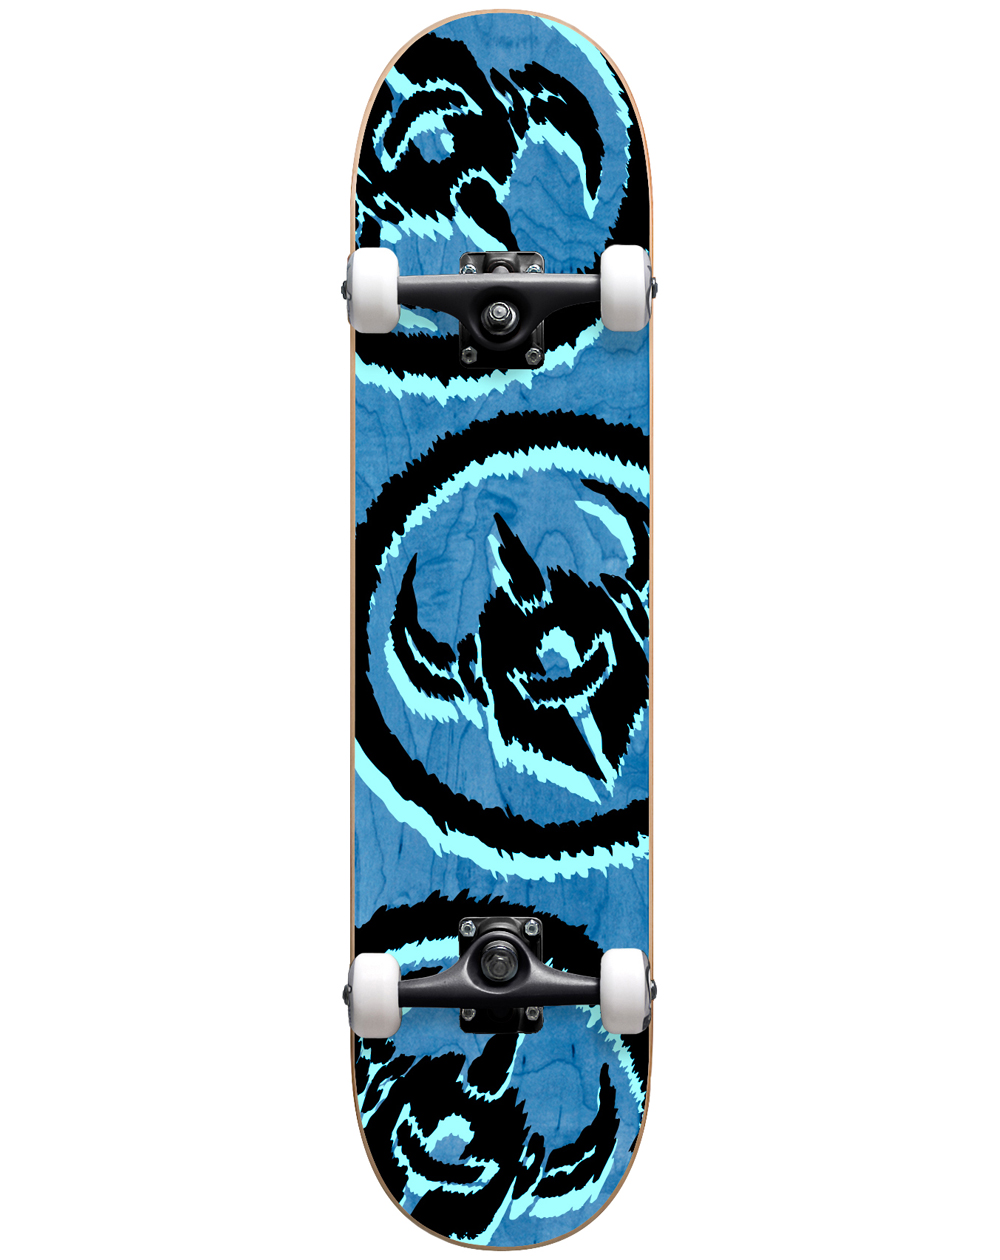 Darkstar Skateboard Completo Dissent 7.875" Blue